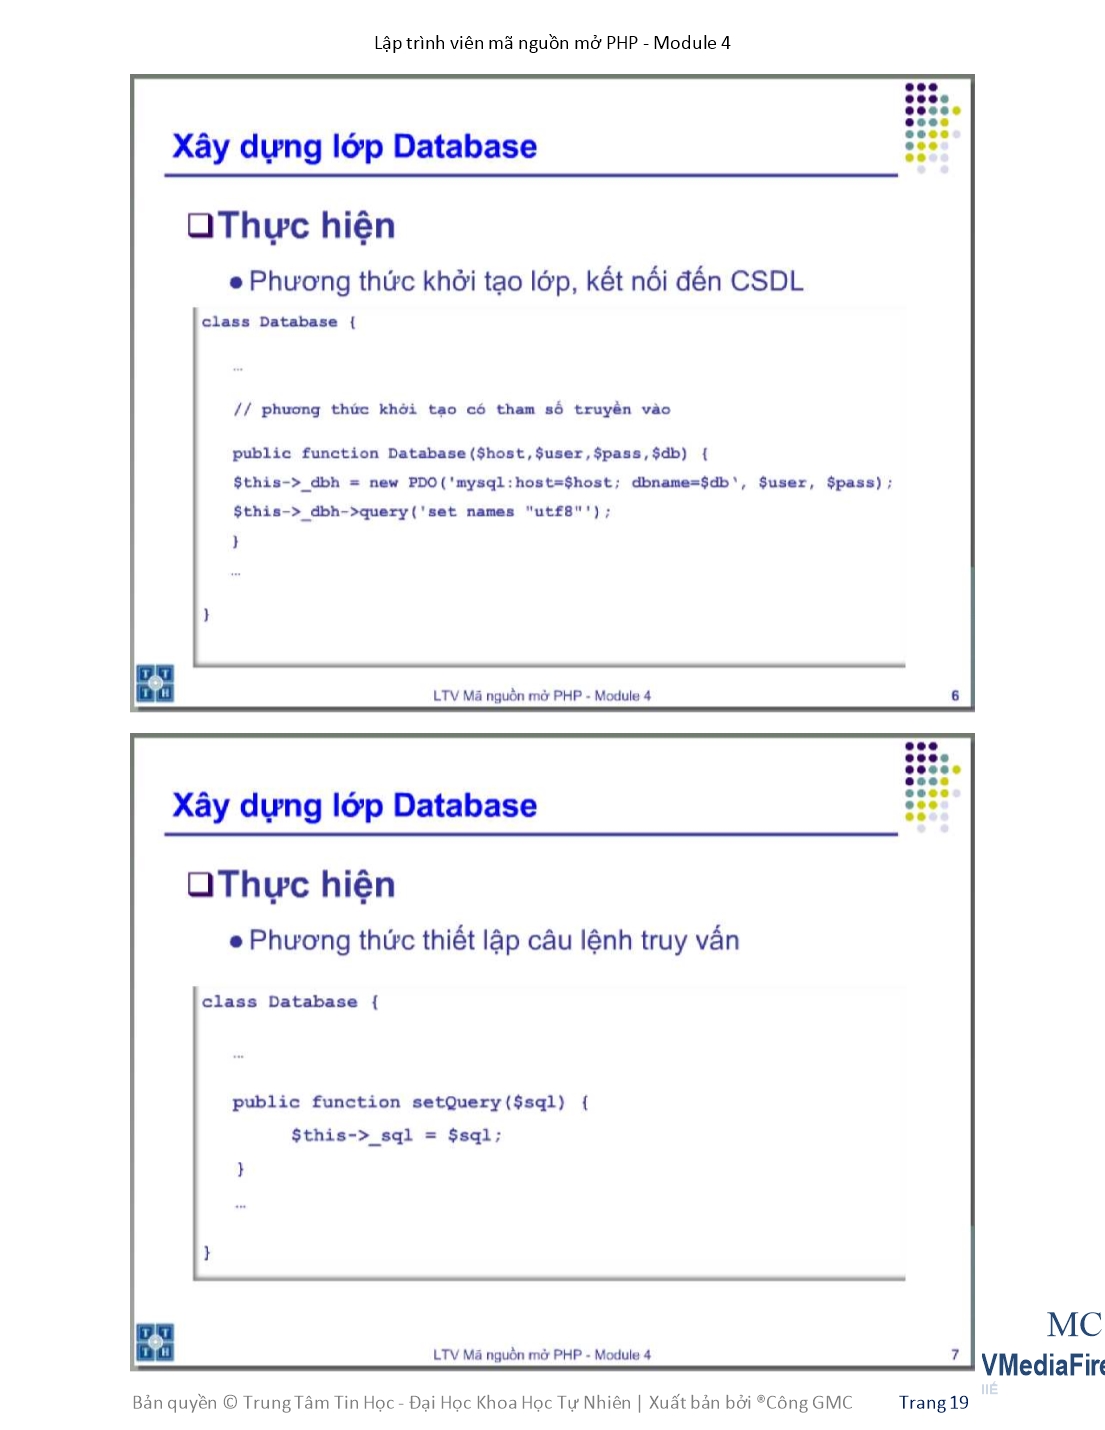 Giáo trình Module 4: Lập trình viên mã nguồn mở PHP - Bài 2: Model trang 4